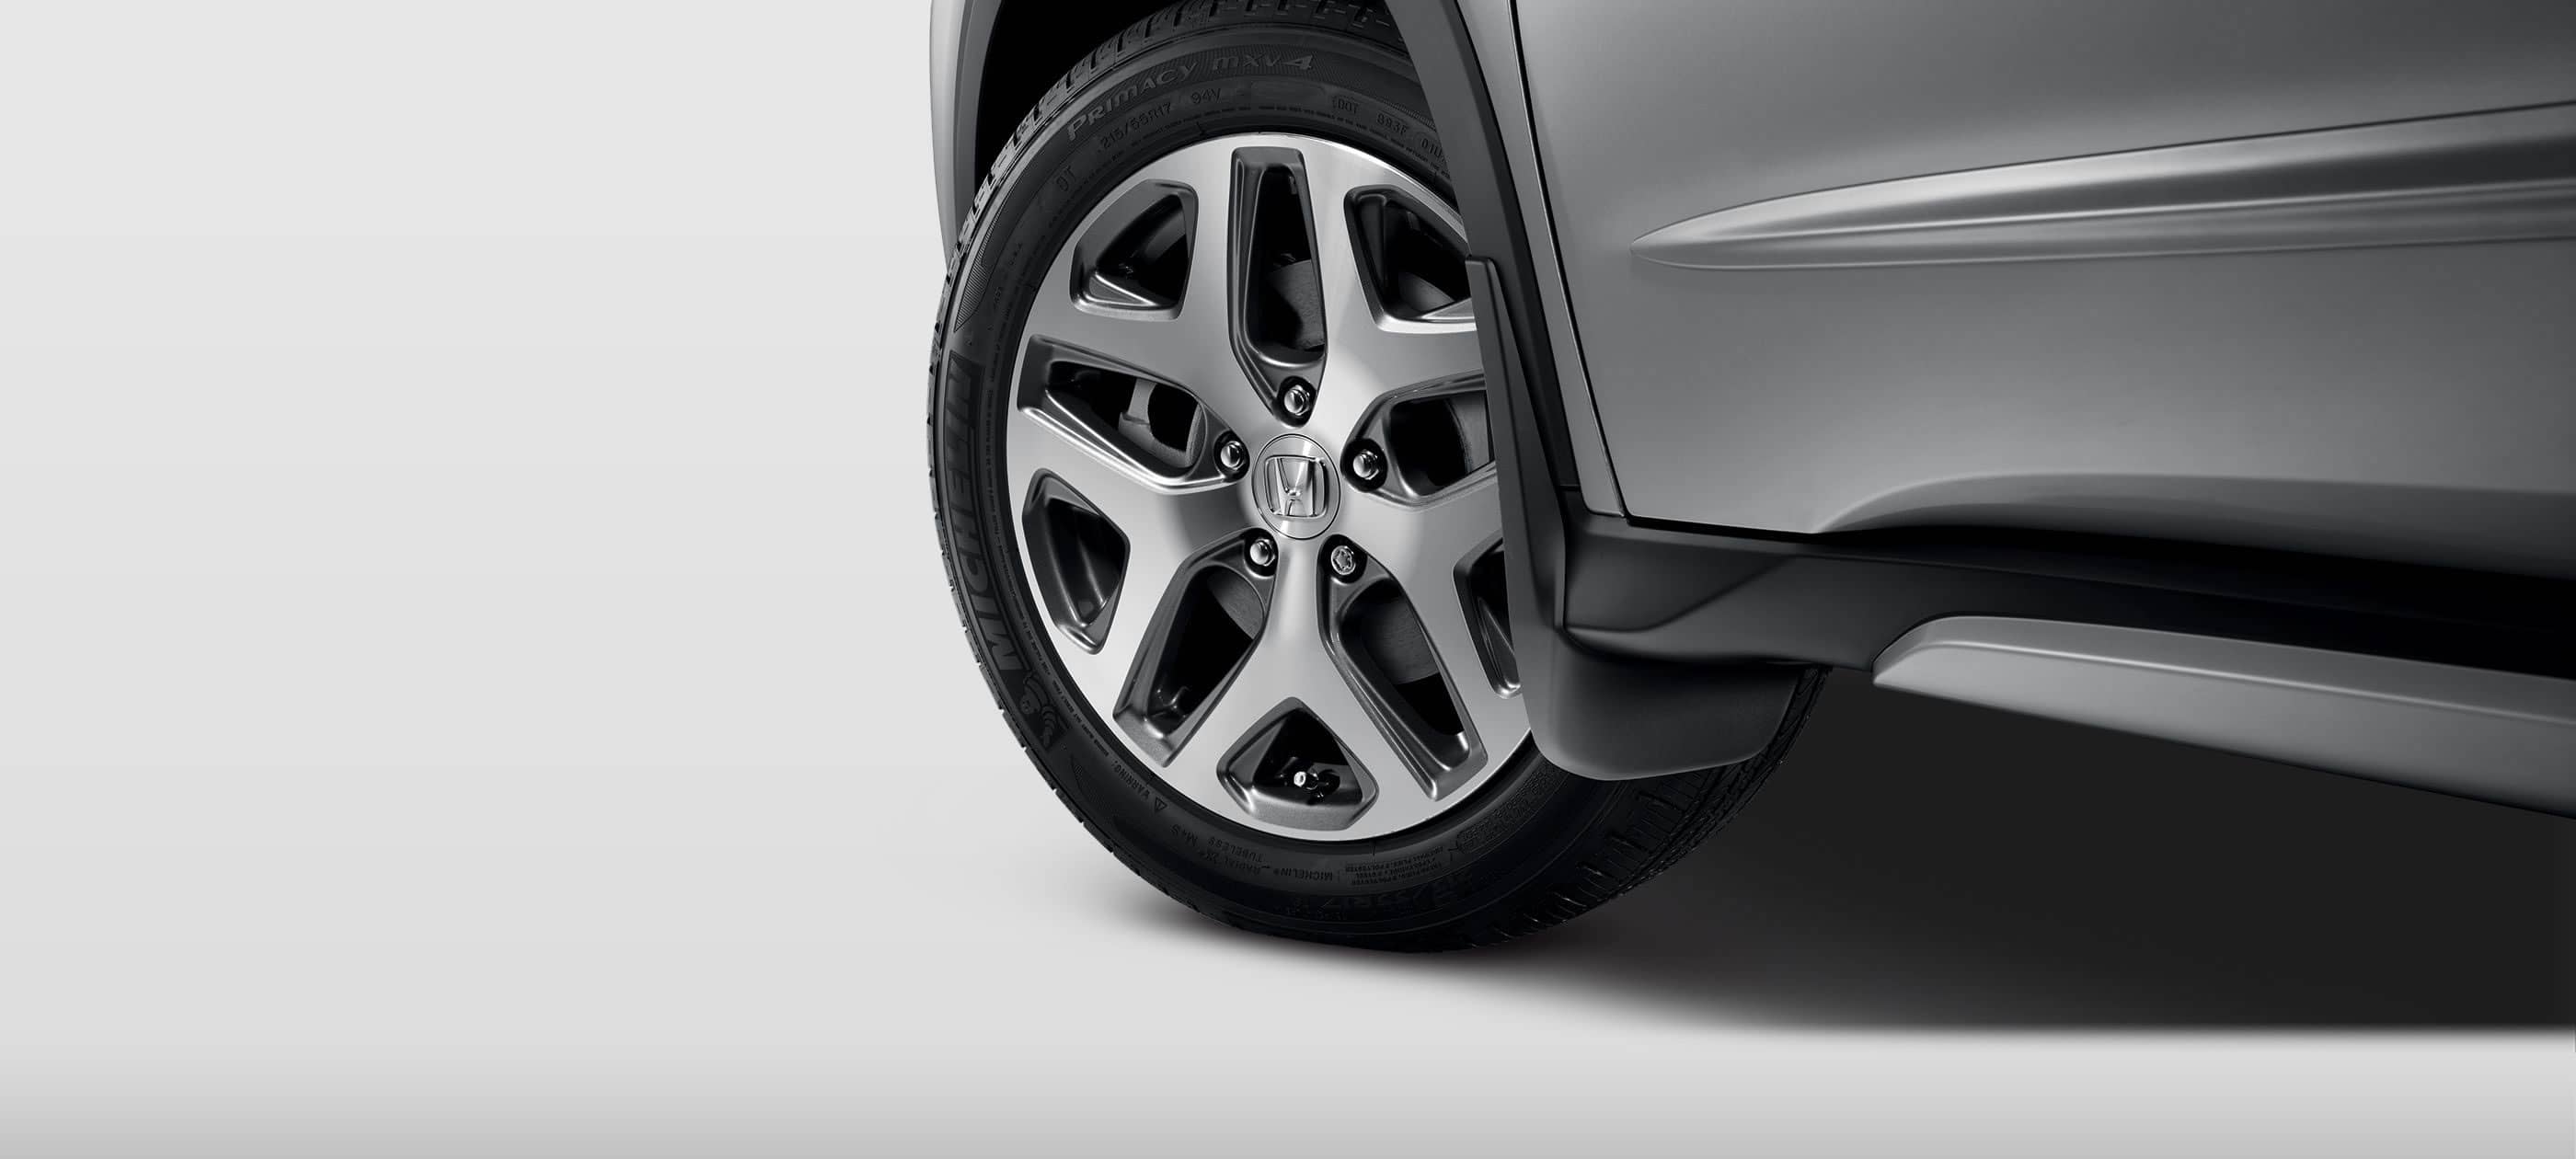 Denver Honda HR-V 17-in alloy wheels